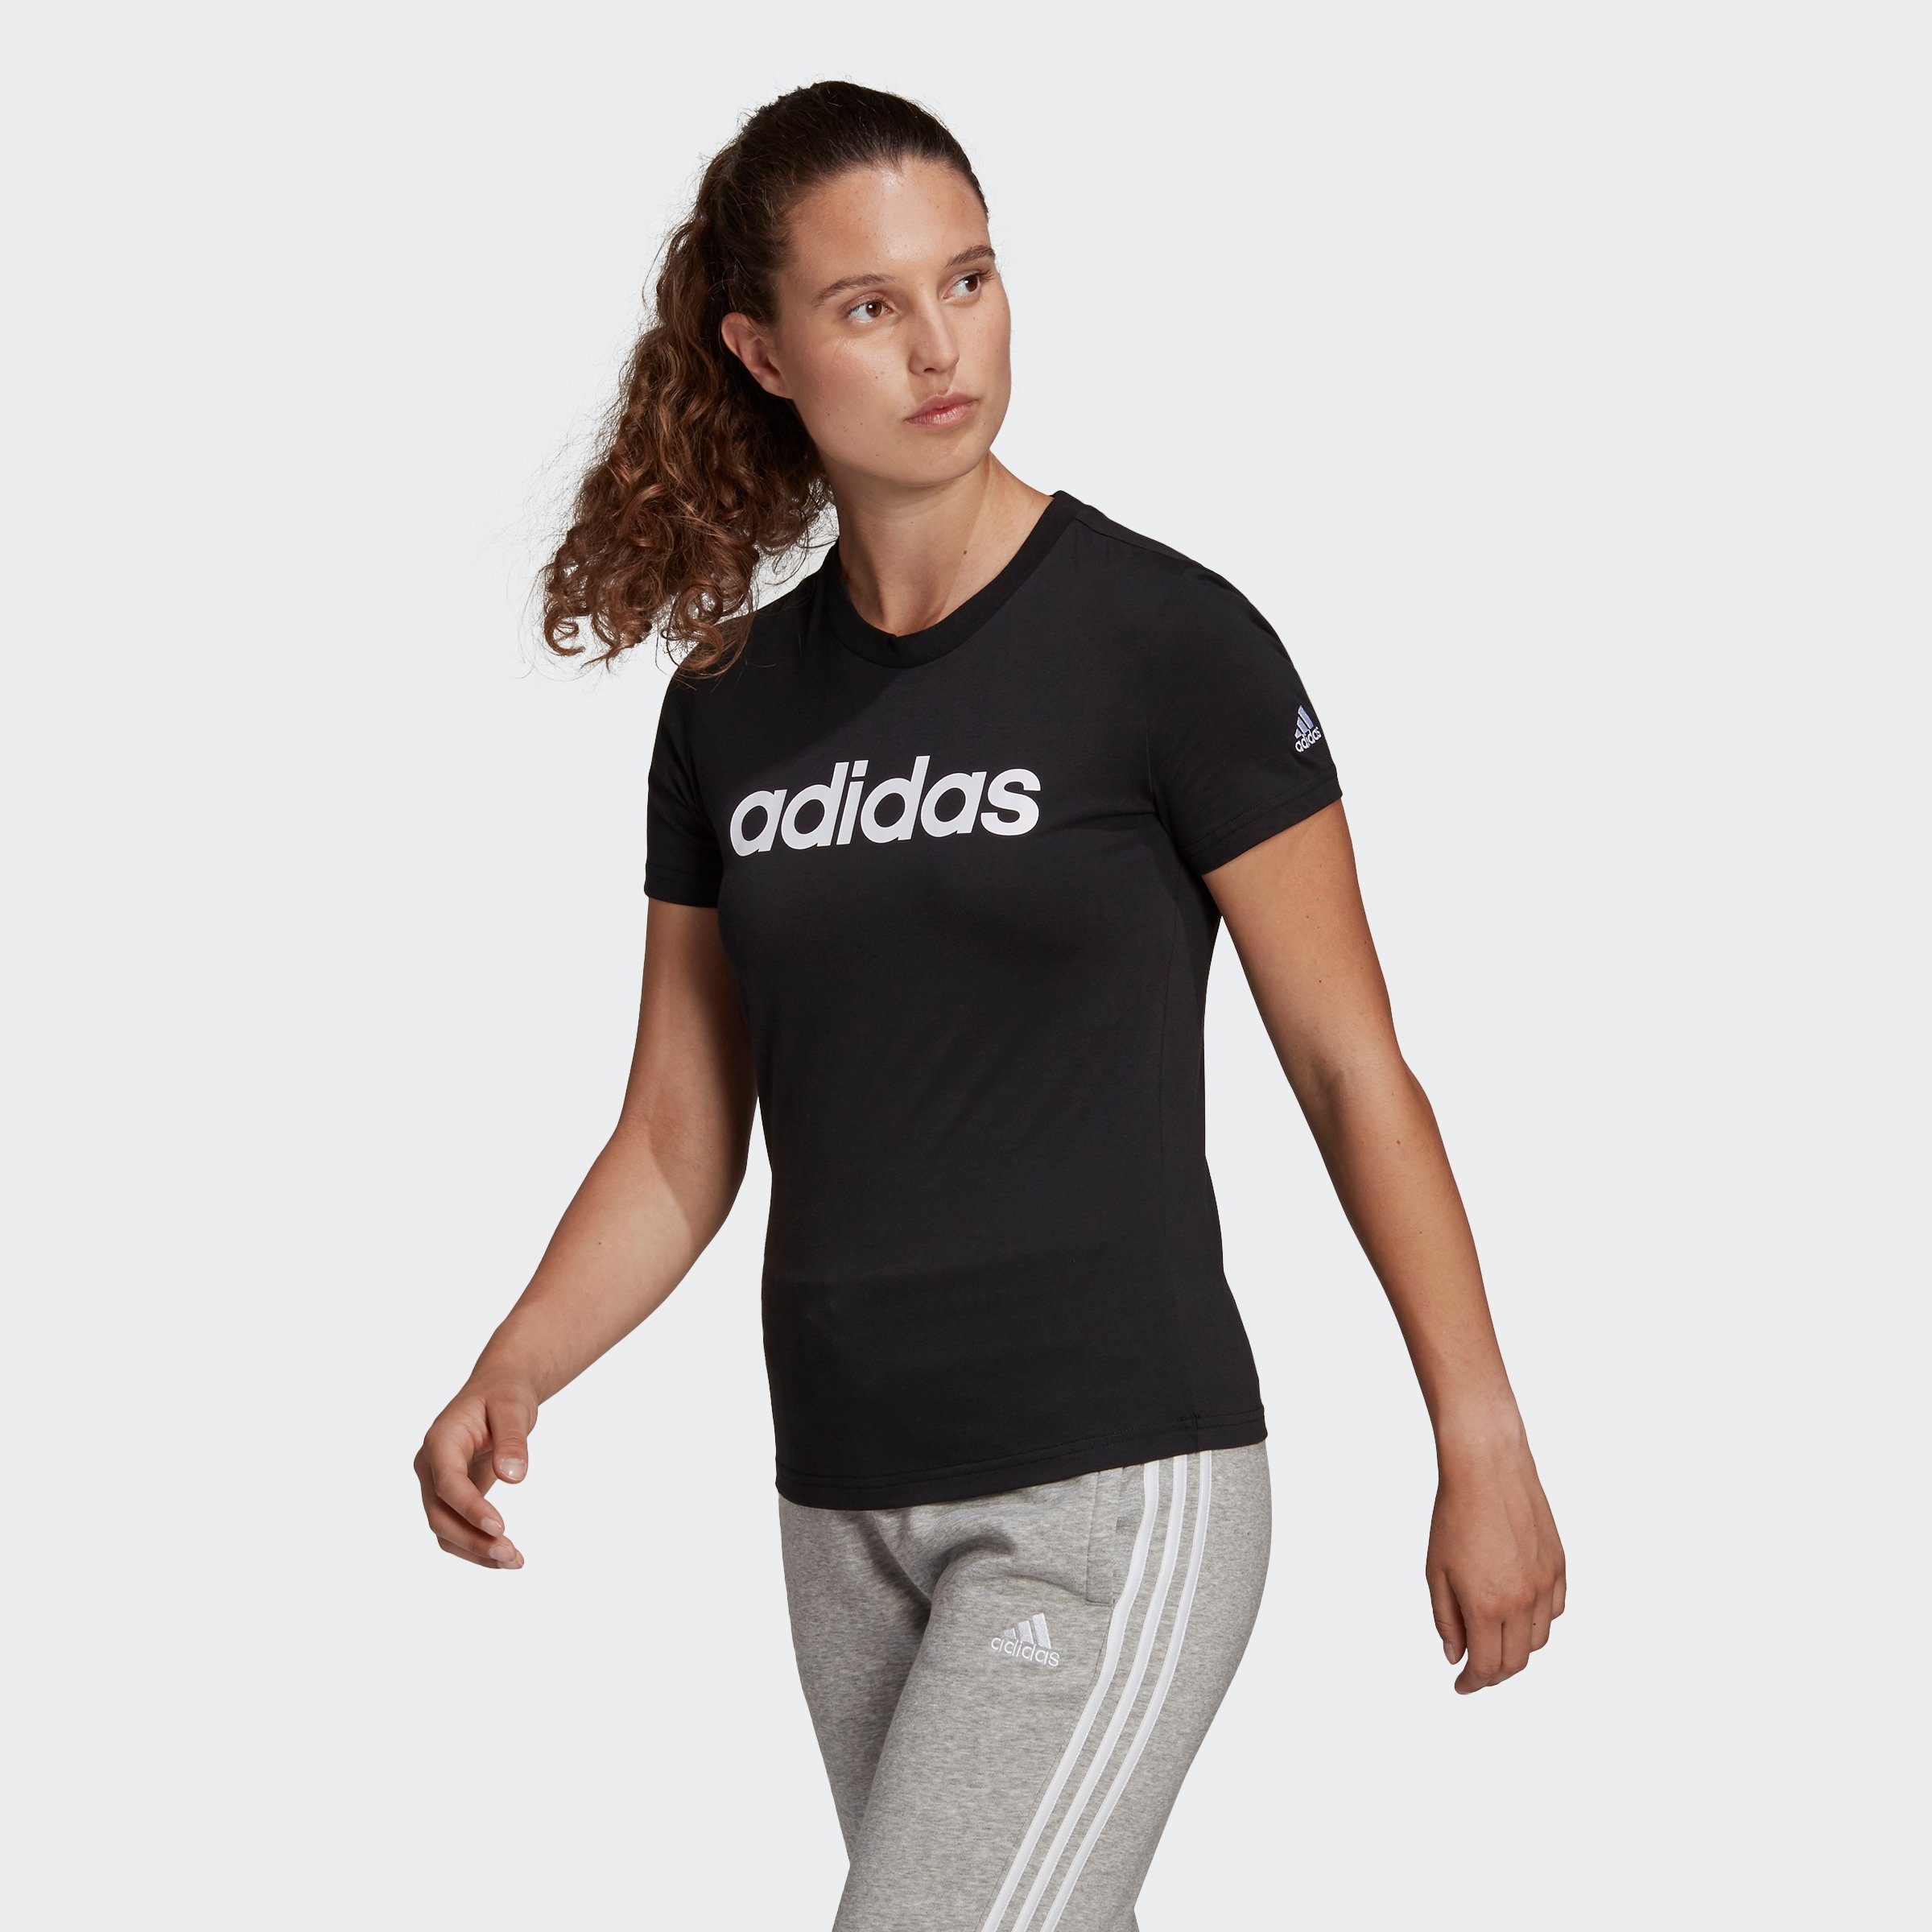 adidas Performance Damen T-Shirts online kaufen | OTTO